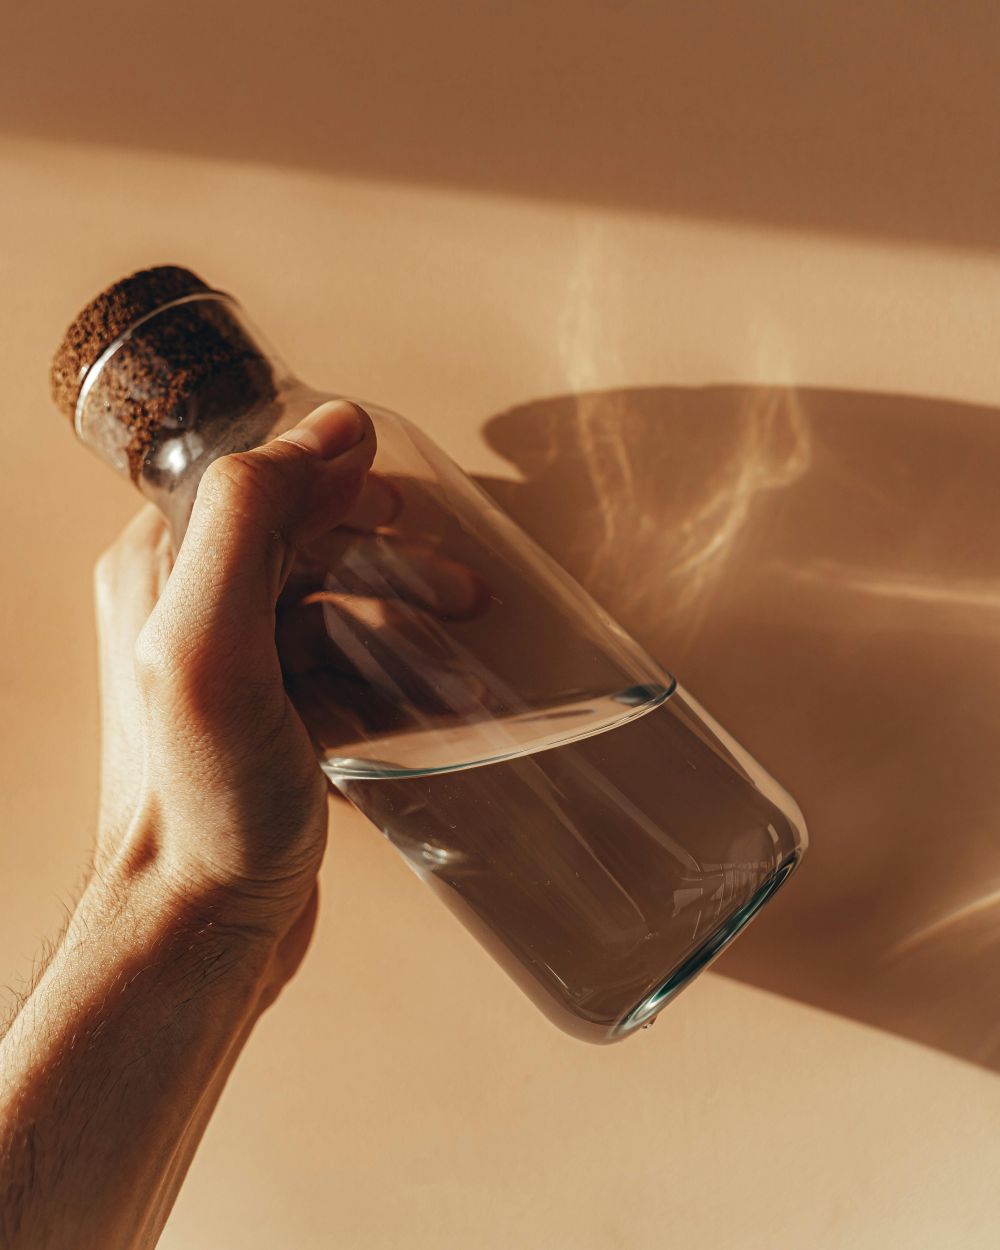 Drikking av overdreven mengder vann kan føre til en rekke negative helseeffekter